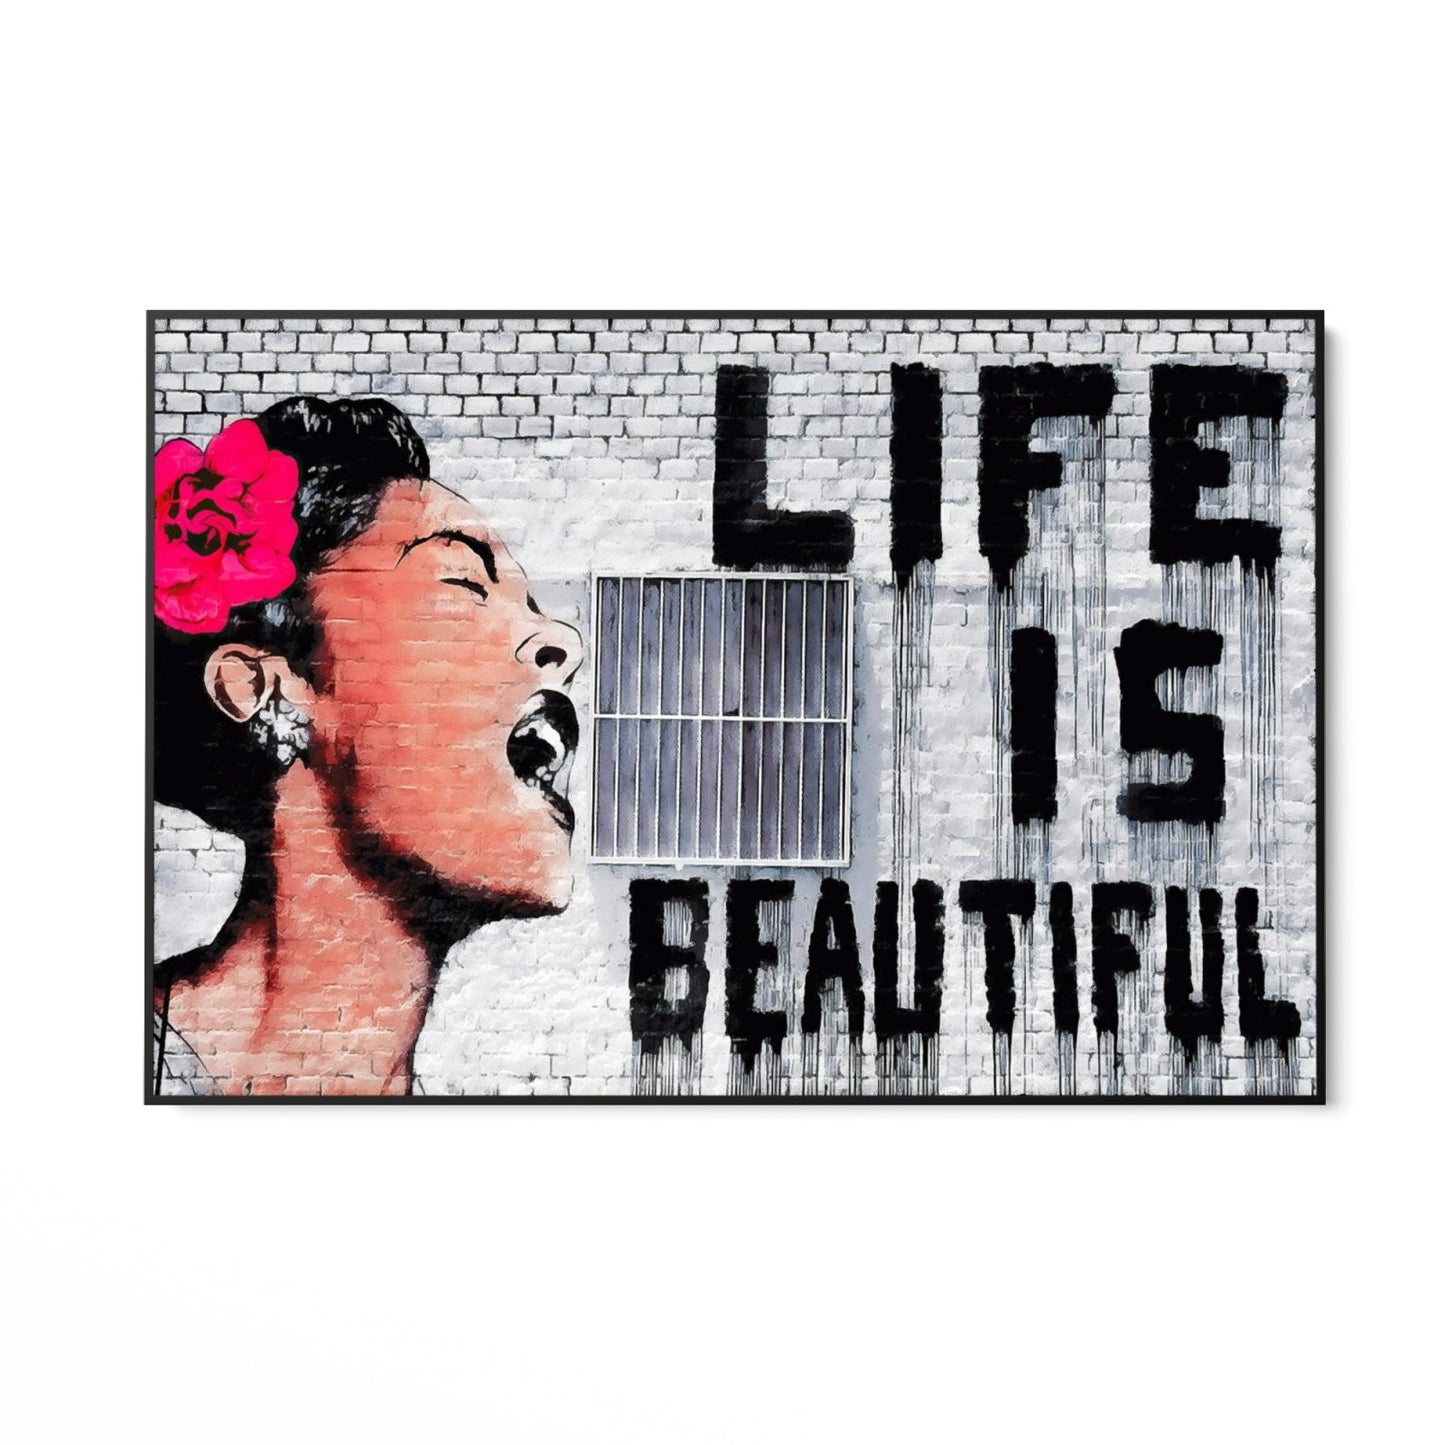 Das Leben ist schön, Banksy